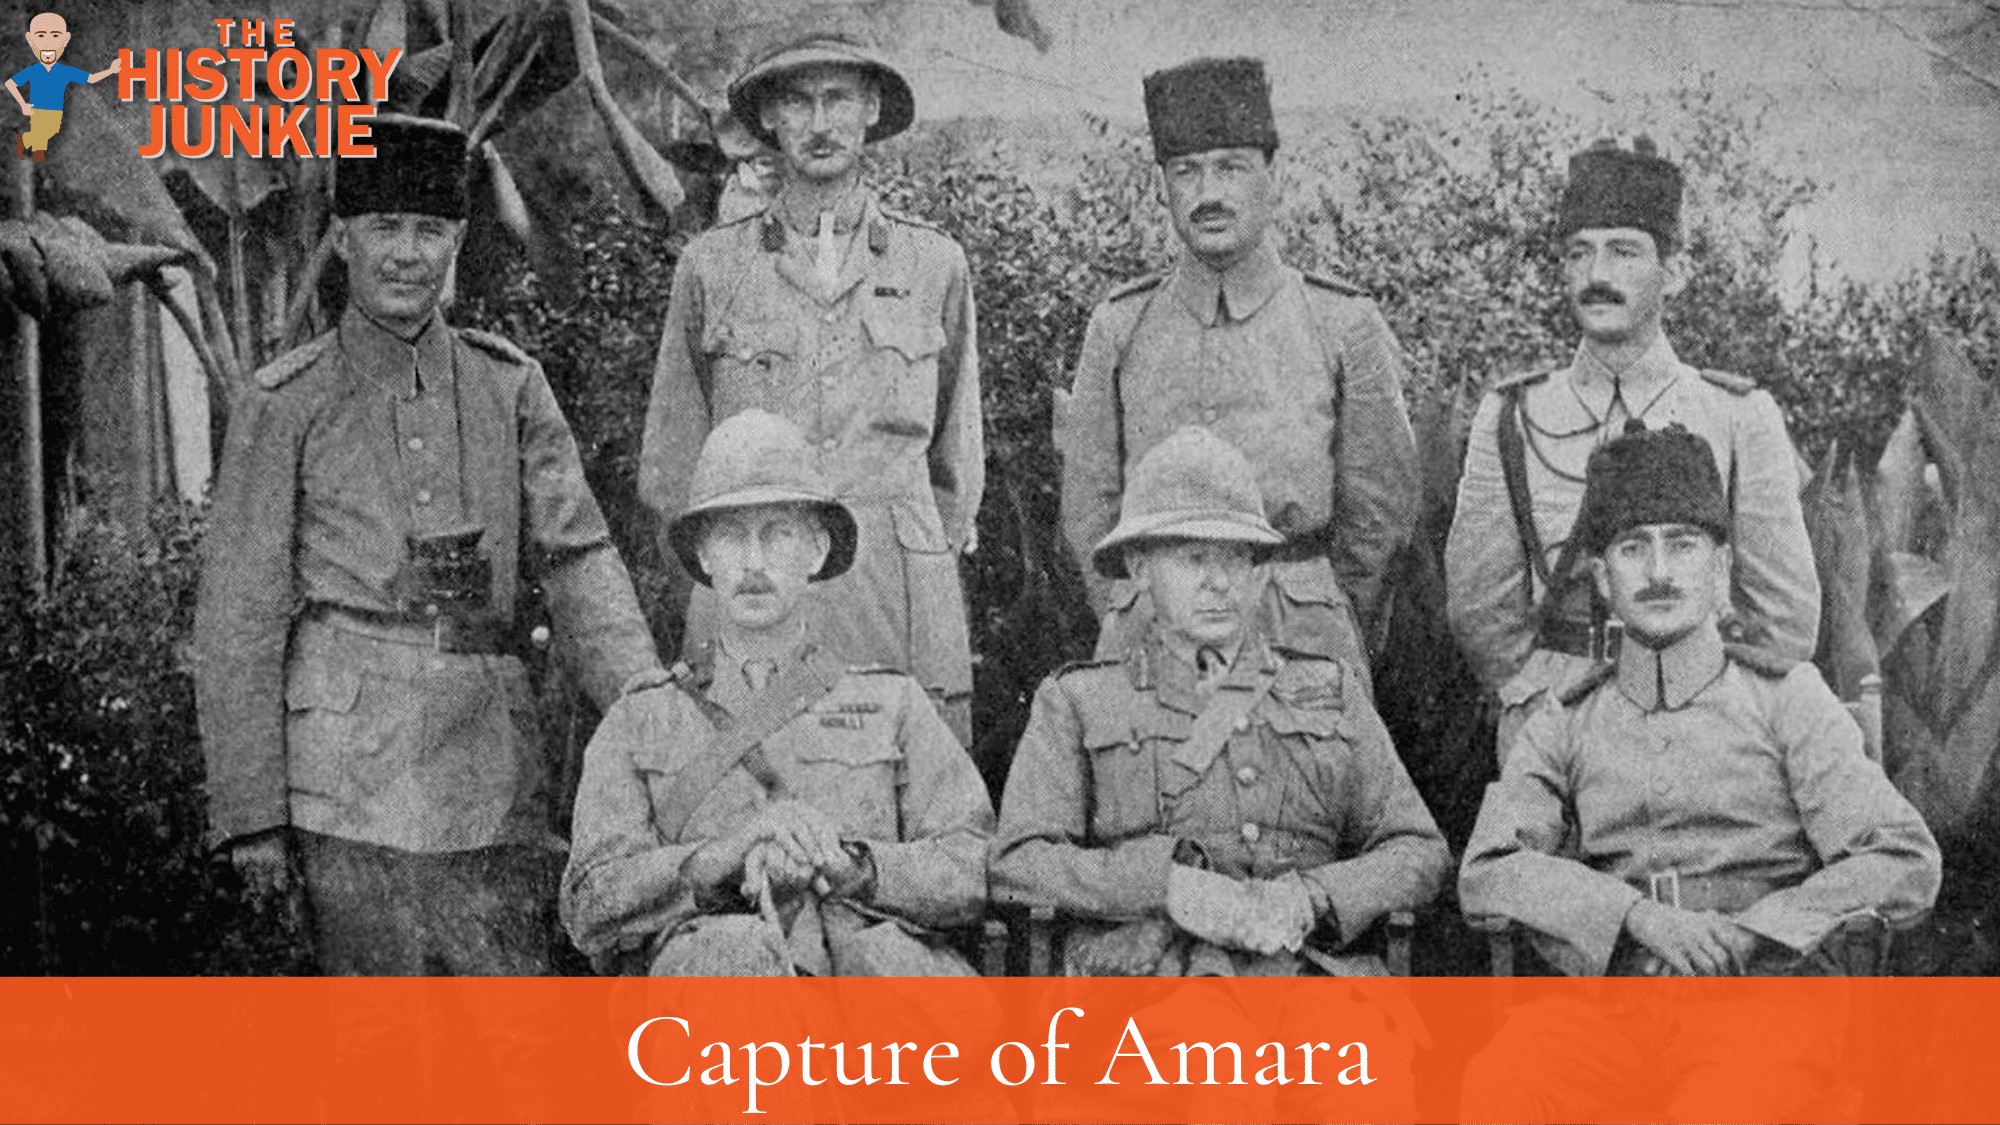 Battle of Amara